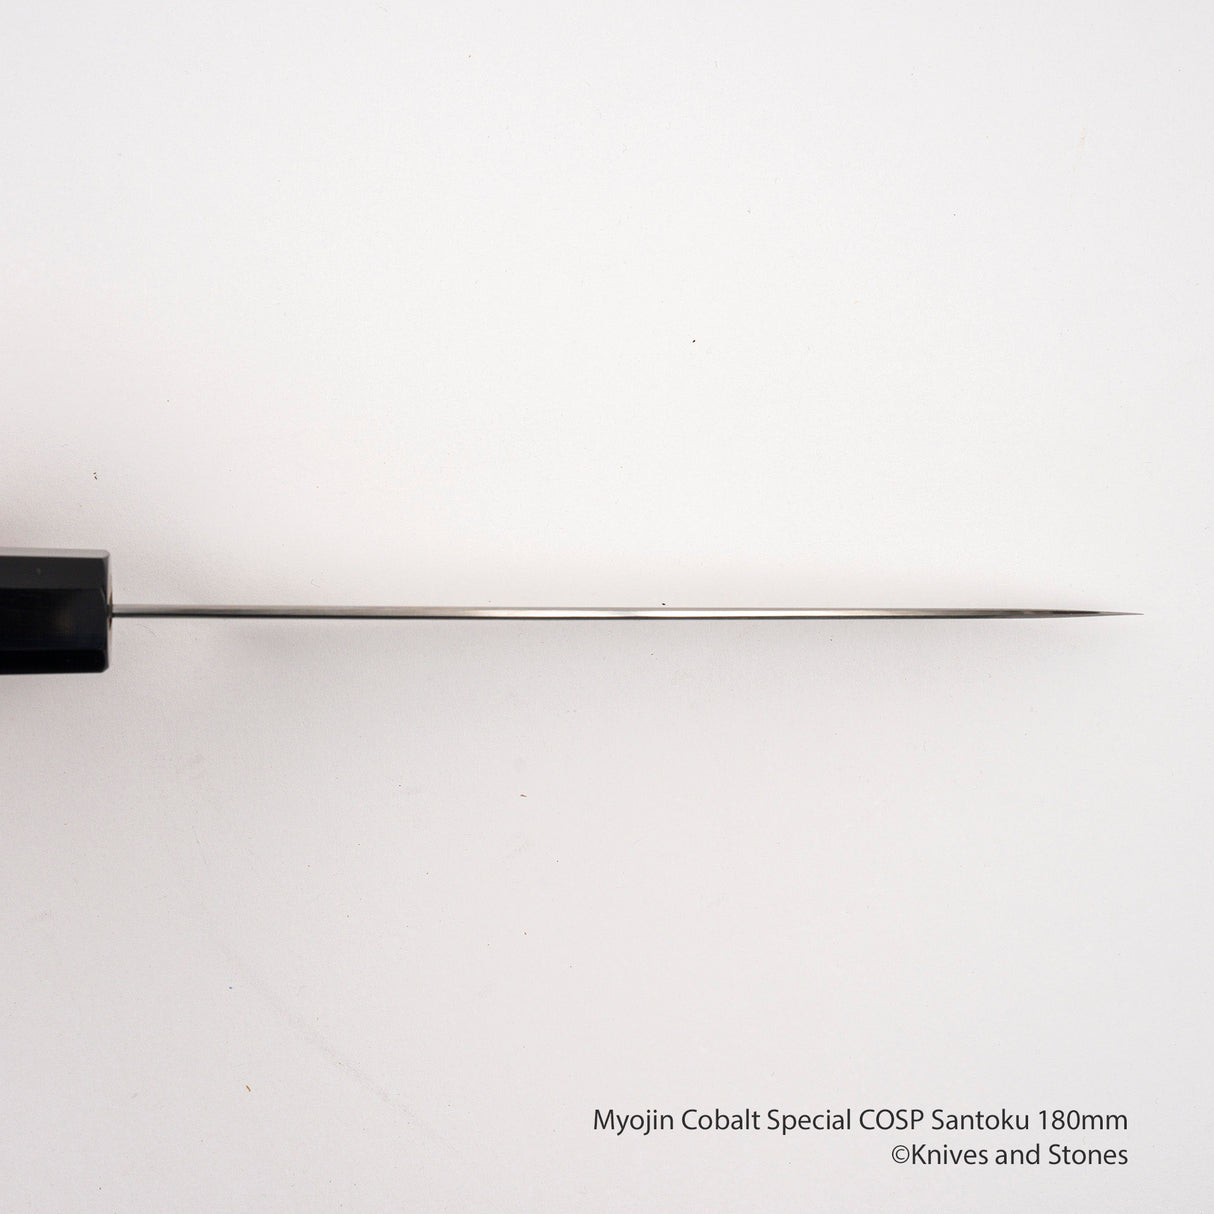 Myojin Cobalt Special COSP Santoku 180mm